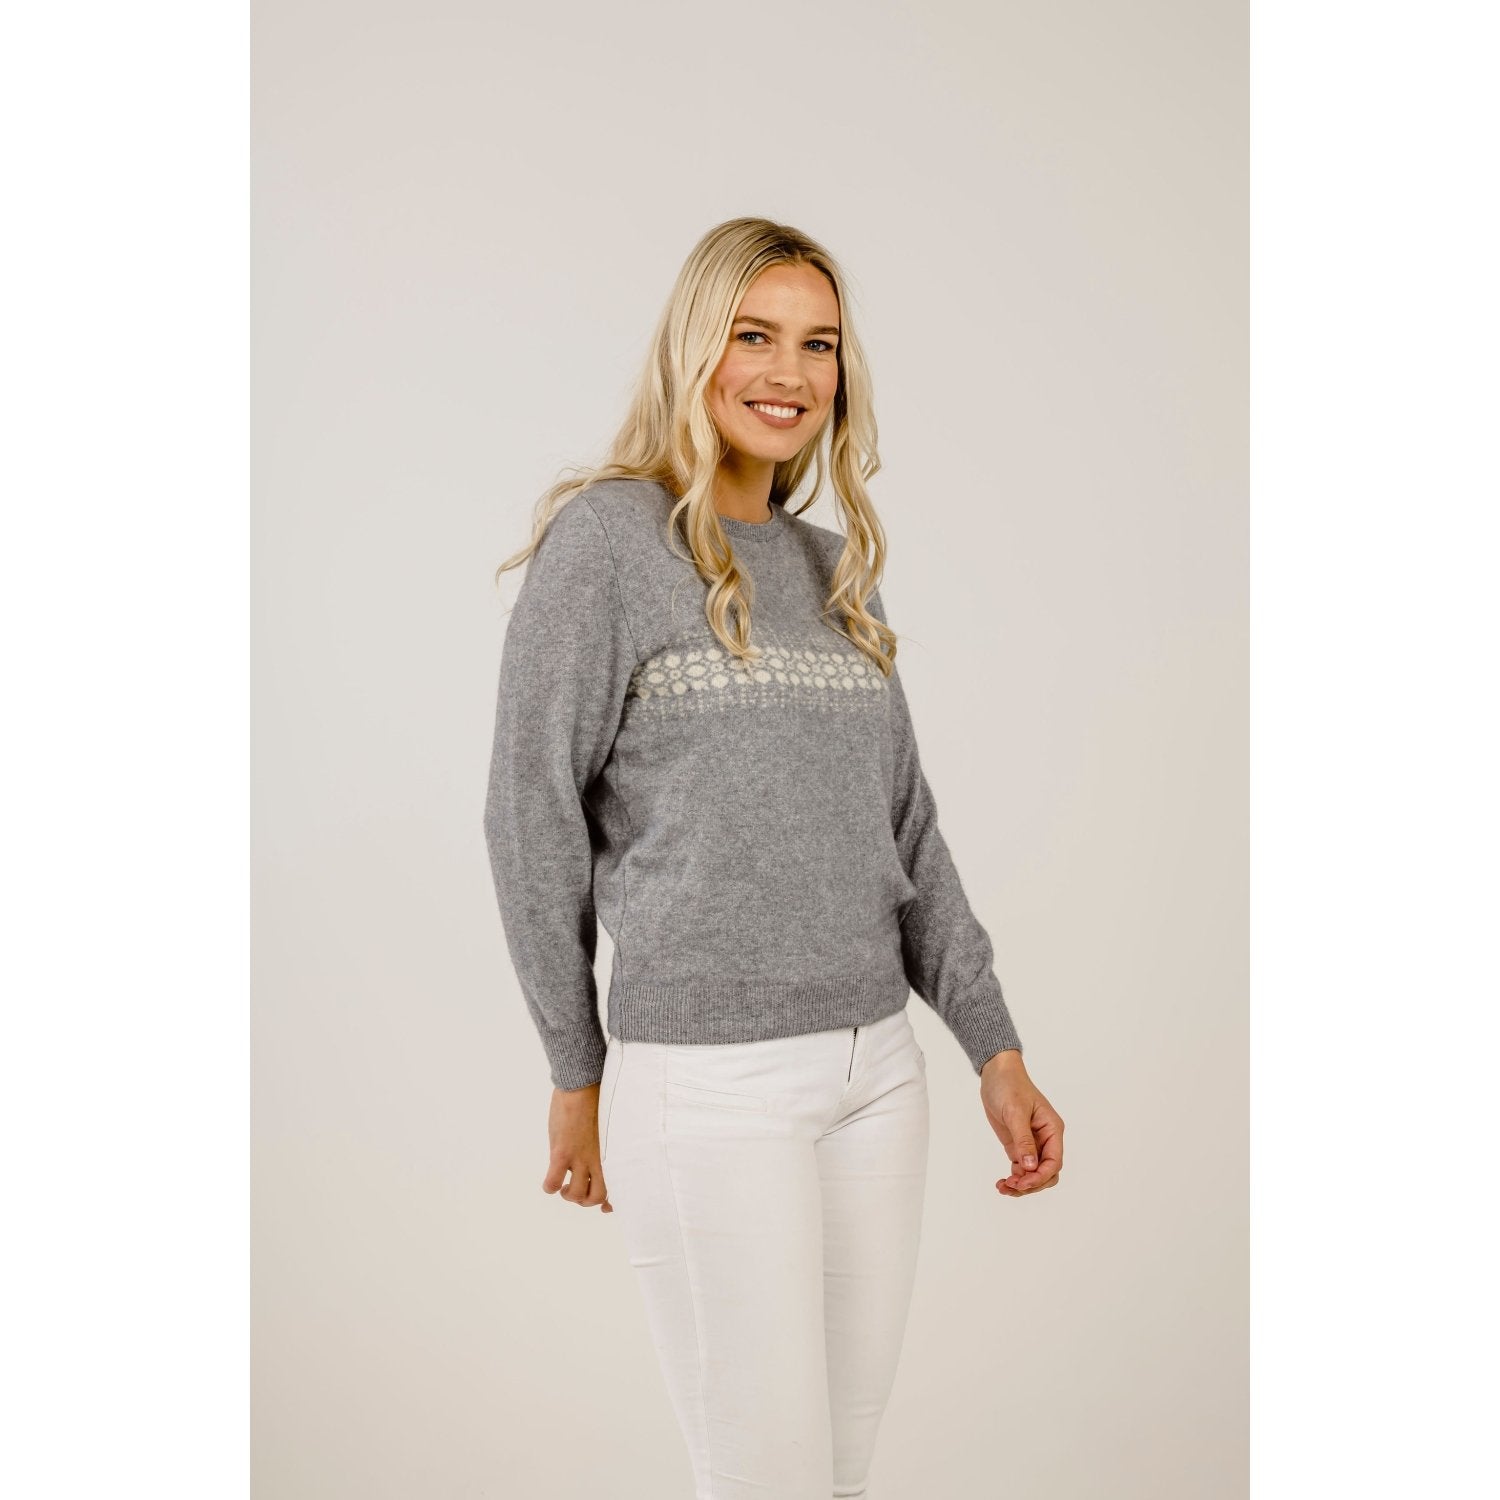 Kapeka Crystal Cashmere sweater - Aotea NZ